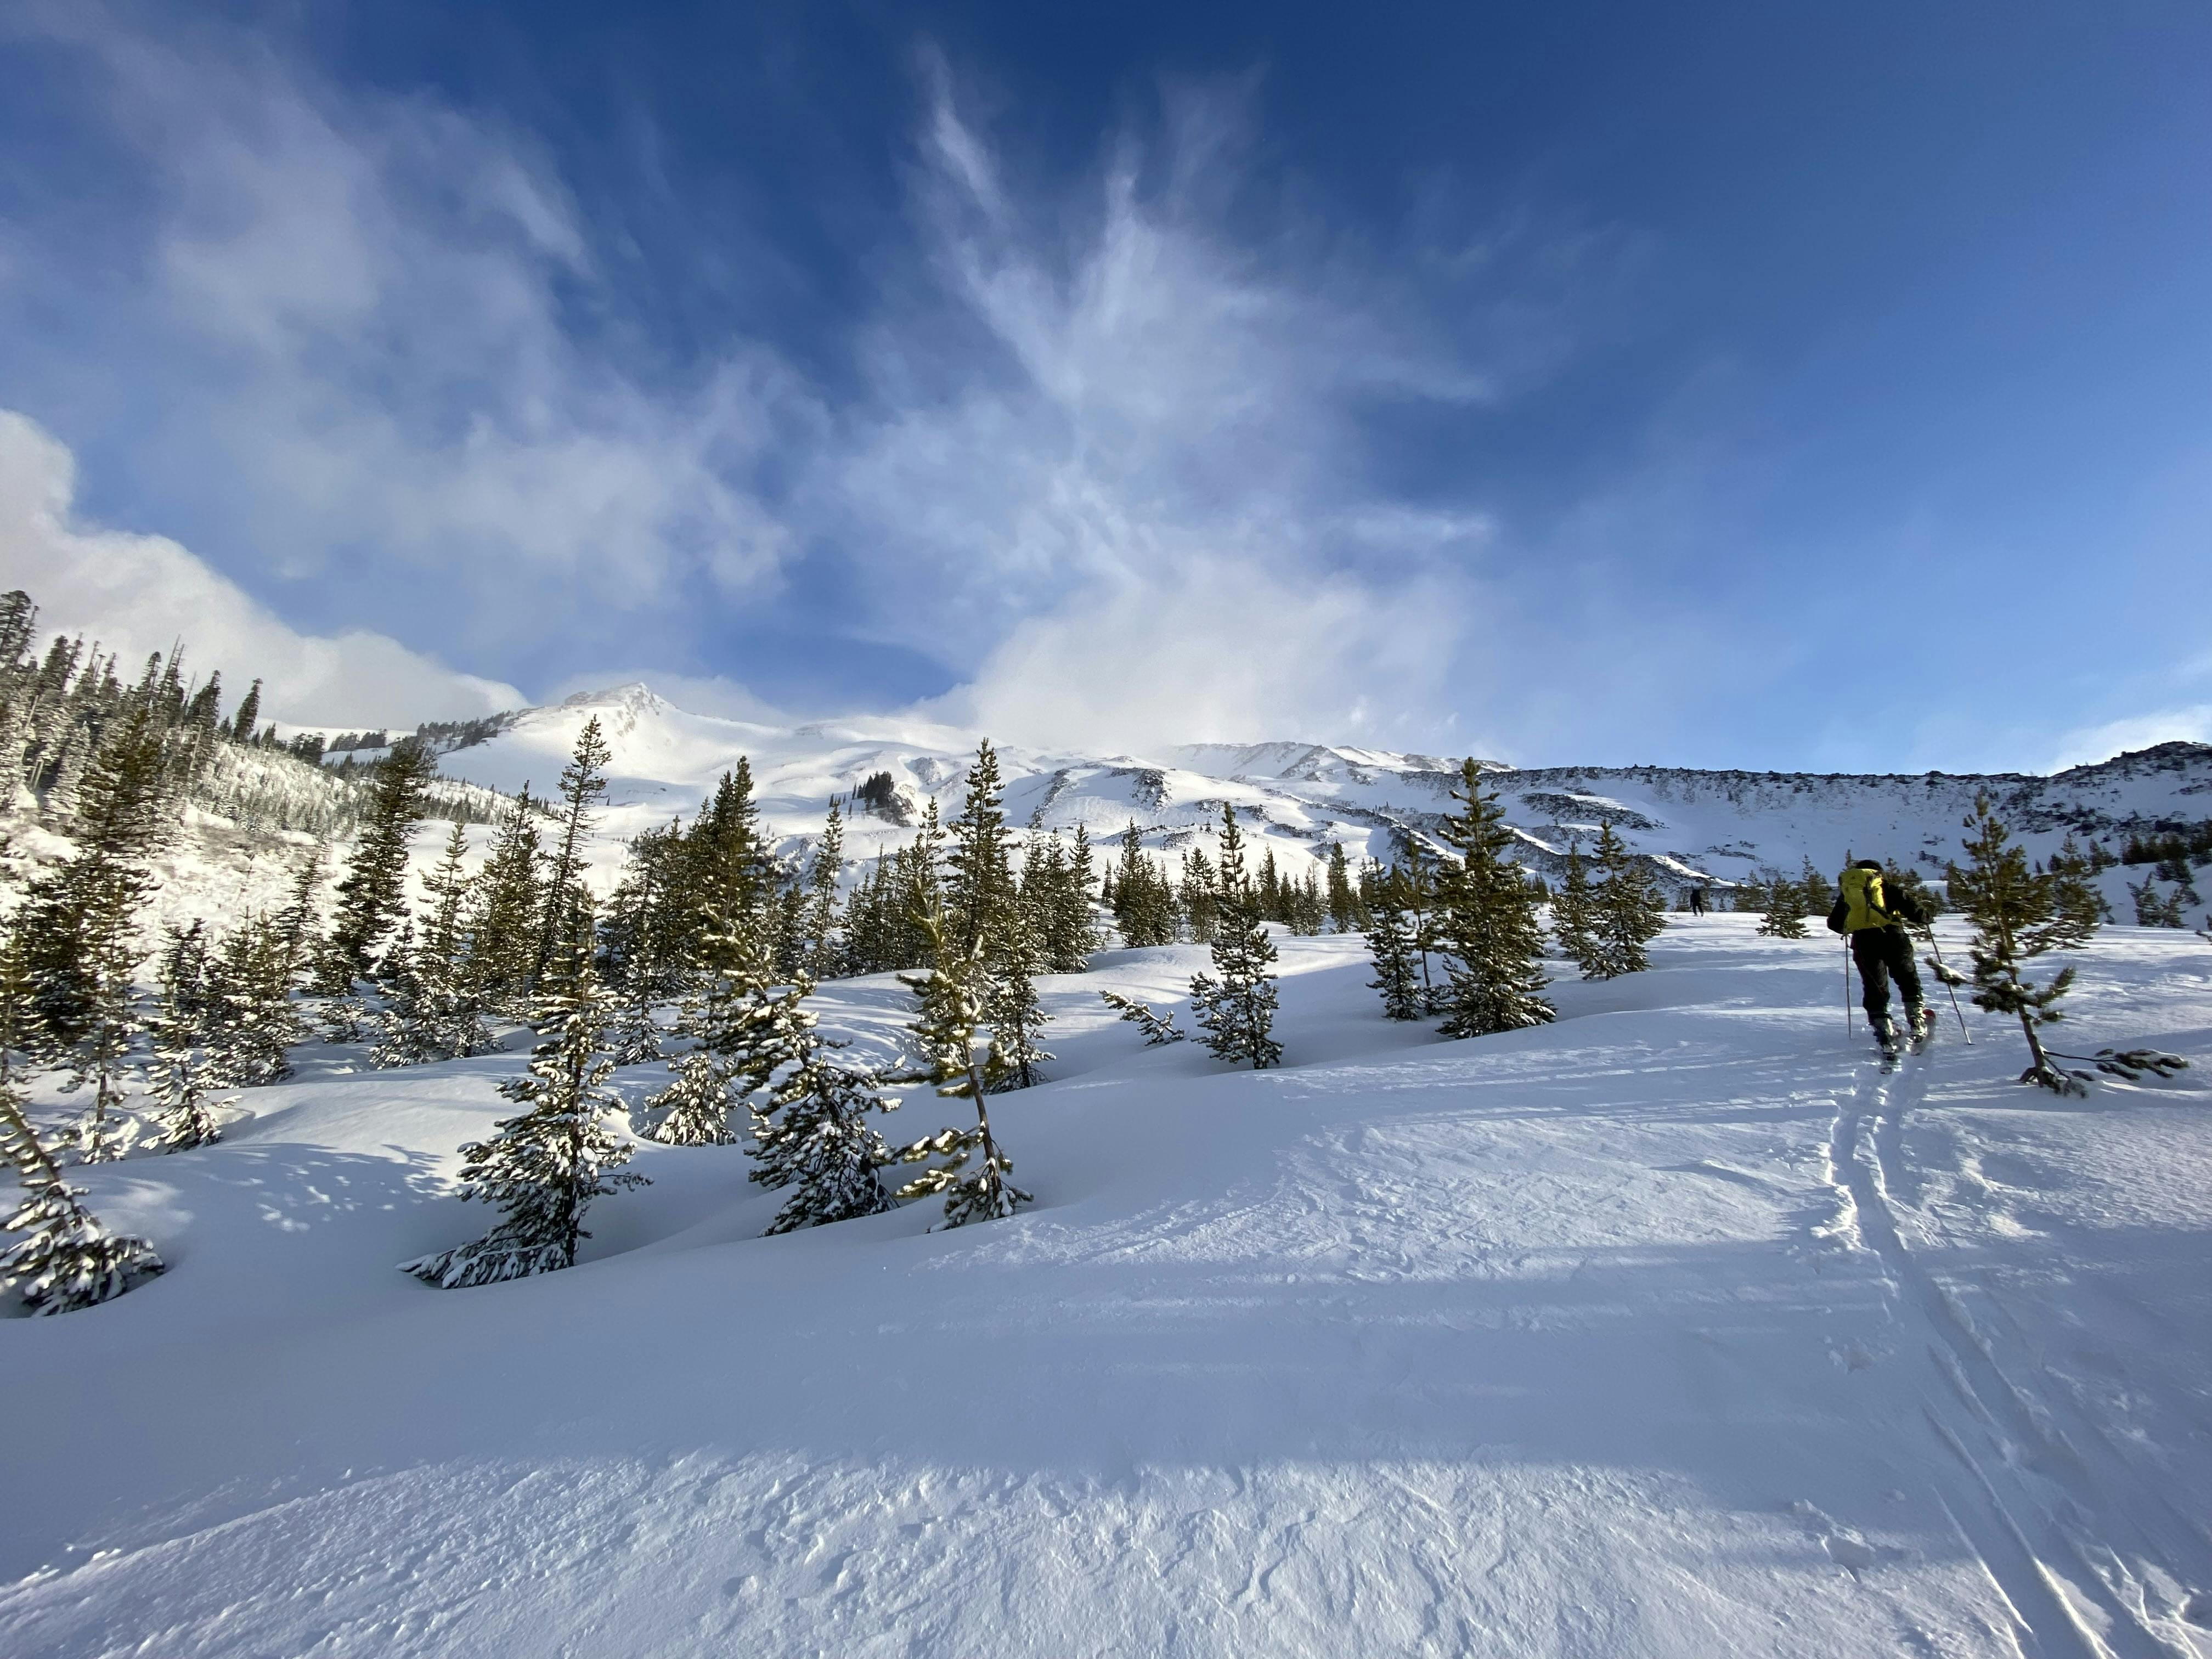 A snowy ski trail. 